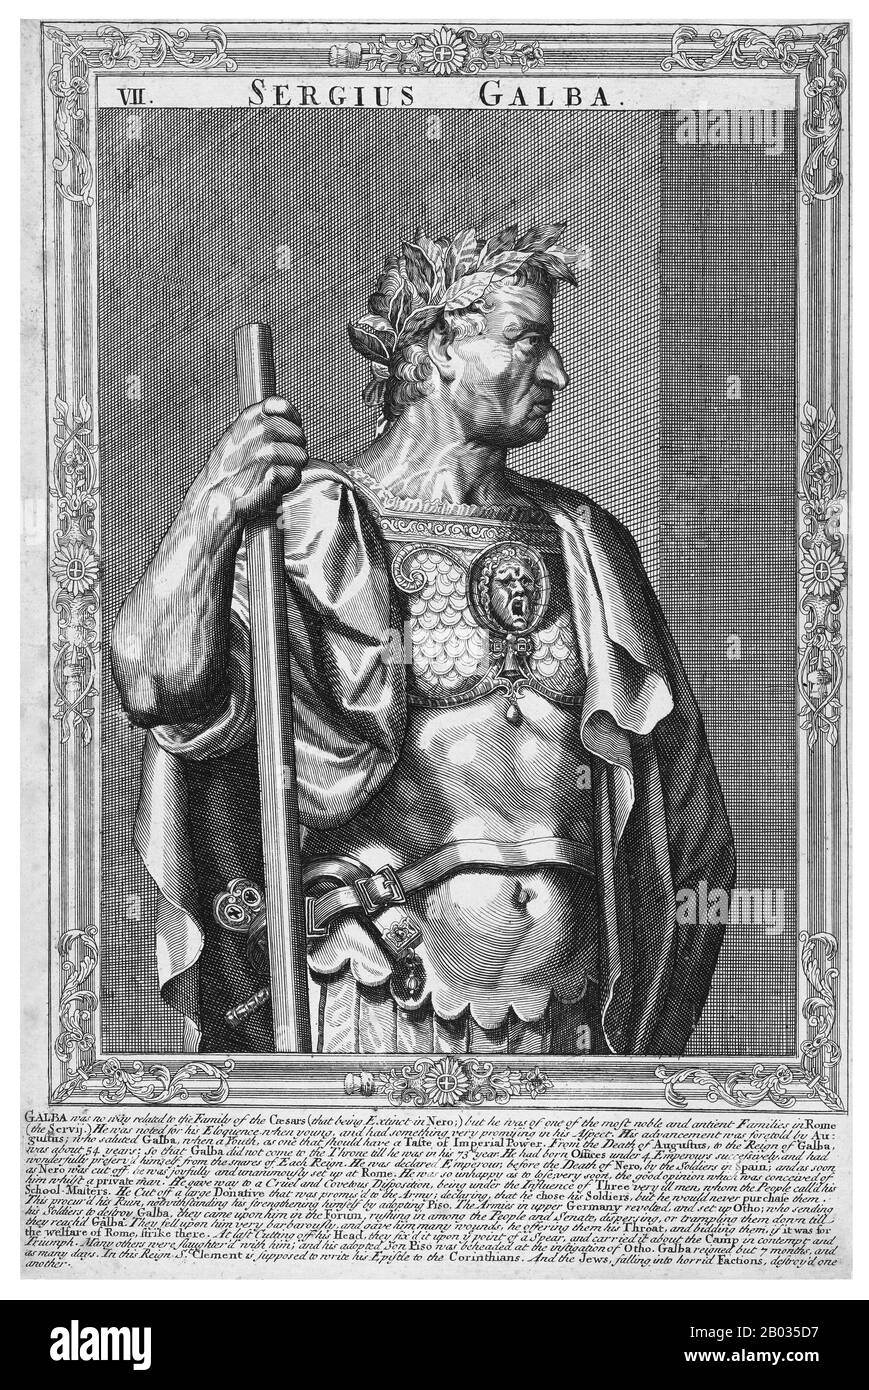 Der gebürtige Servius Sulpicius Galba, 24. Dezember (3 v. Chr. - 15. Januar 69 v. Chr.), stammte aus einer adligen und wohlhabenden Familie, obwohl er von Geburt an keinen Zusammenhang hatte und nur eine sehr abgelegene Verbindung durch die Adoption in eine der Julio-Claudian-Dynastie. Galba weigerte sich, von Freunden ermutigt zu werden, nach Caligulas Ermordung ein Angebot für das Reich zu machen, diente Claudius loyal und lebte für den Großteil von Neros Herrschaft im Ruhestand. 68 v. Chr. wurde er jedoch über Neros Absicht informiert, ihn töten zu lassen, und er entsetzte sich von Nero, um sich selbst zu retten. Nach Neros Selbstmord wurde Balba zum "Caesar" ernannt und tötete viele Soldaten Stockfoto